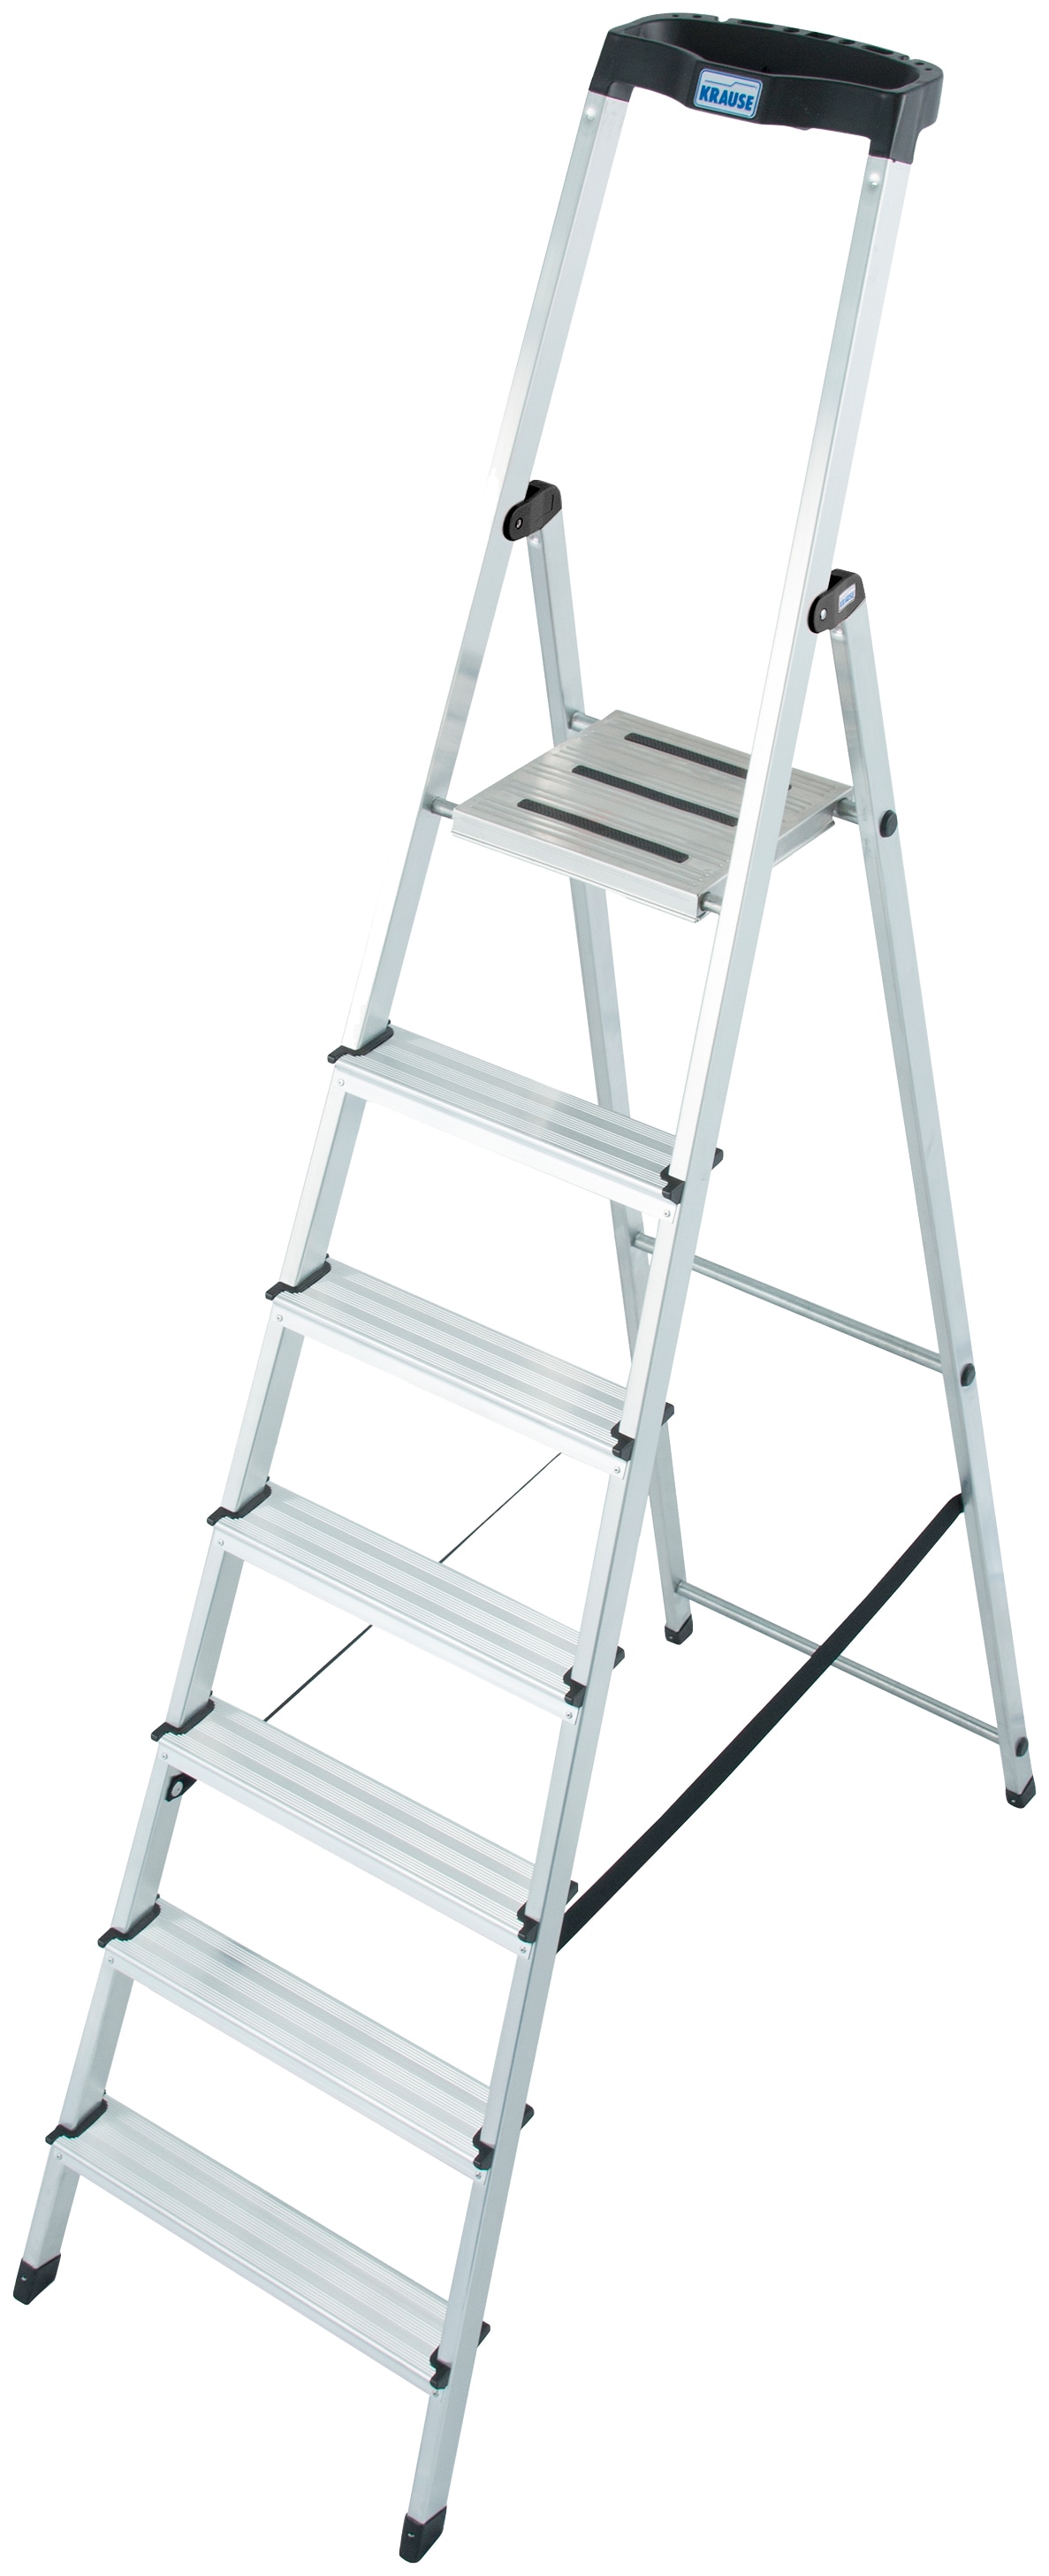 KRAUSE Stehleiter "Safety", Aluminium, 1x7 Stufen, Arbeitshöhe ca. 350 cm